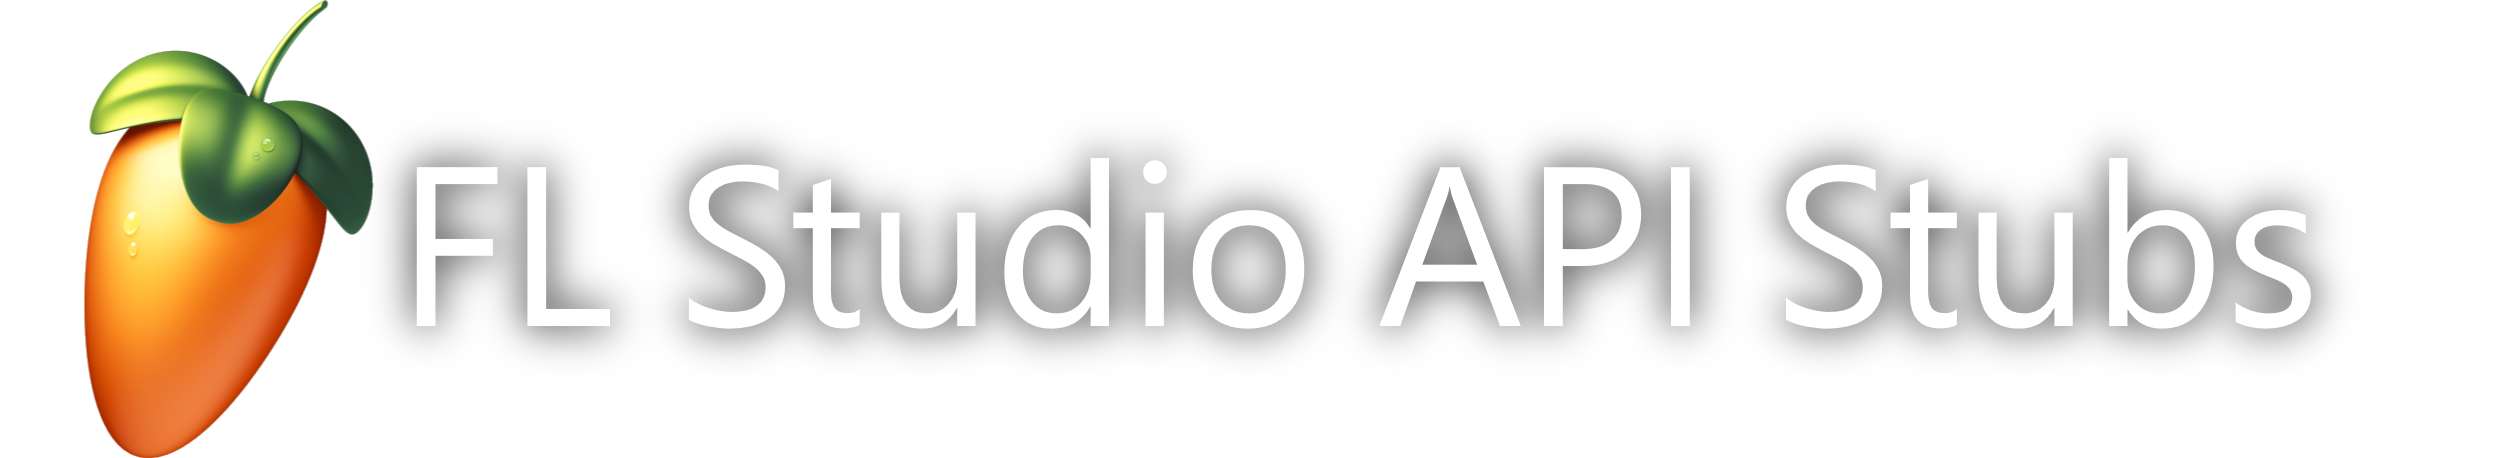 Banner for FL Studio API Stubs